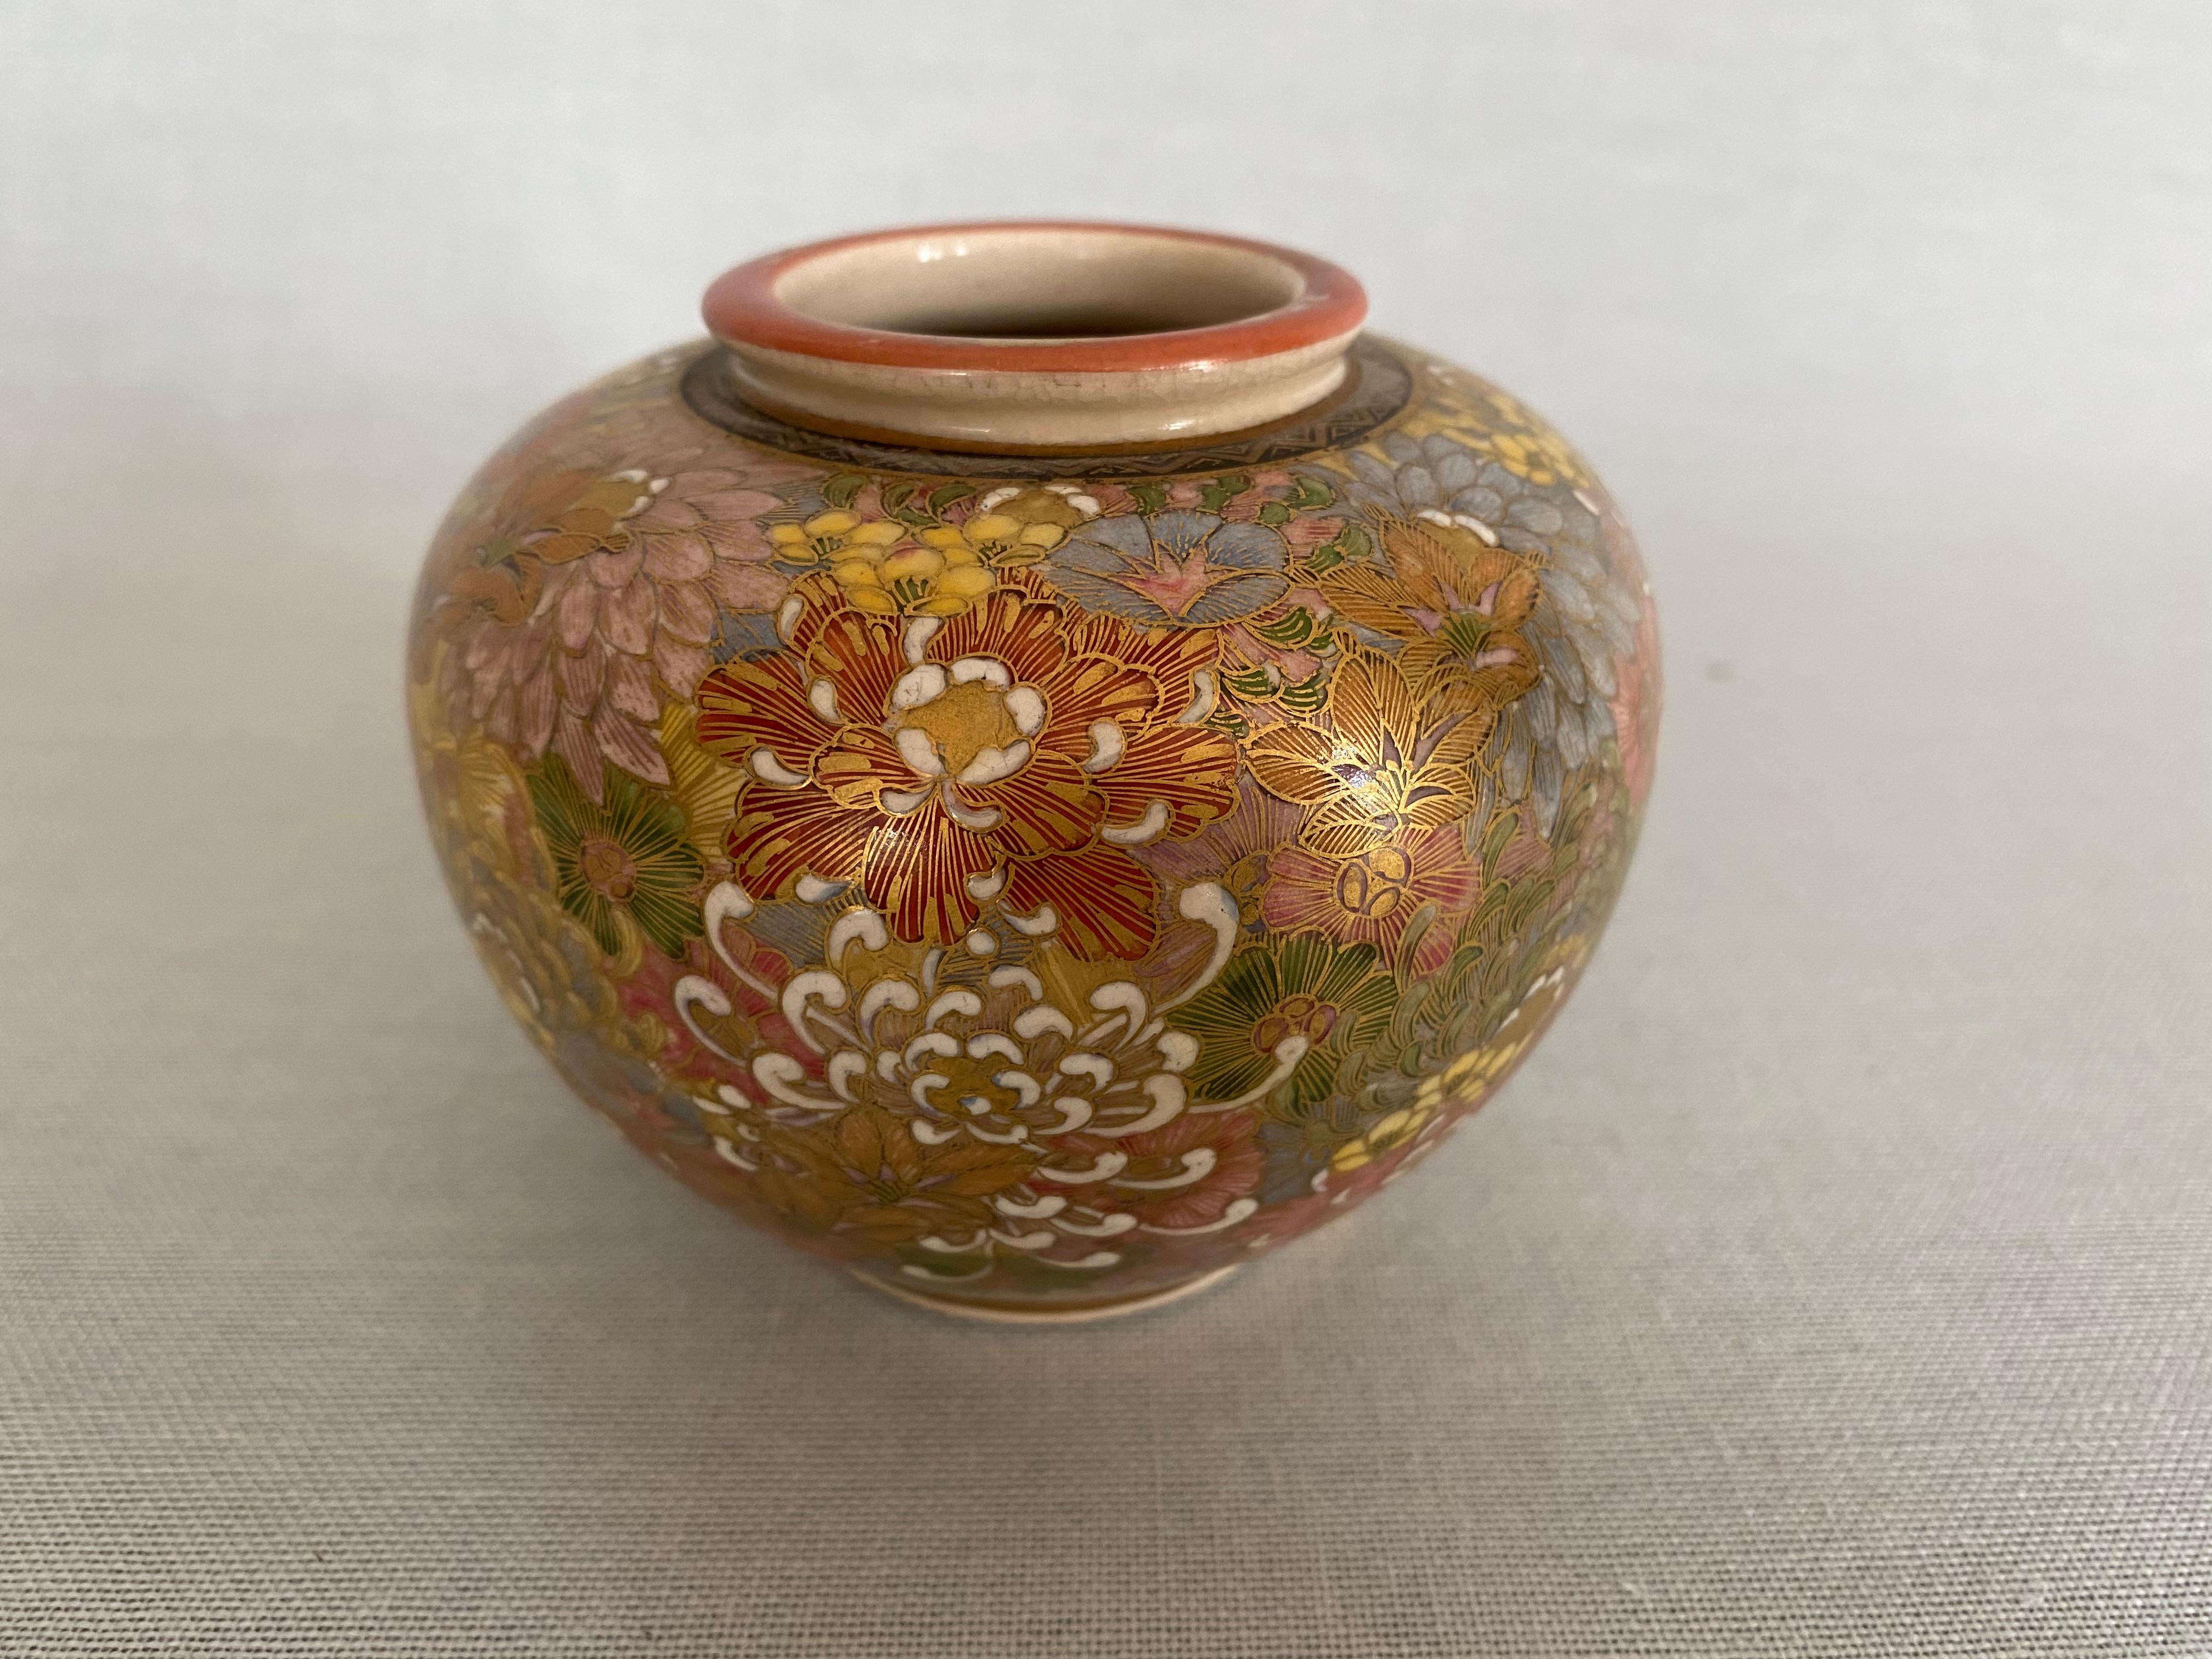 Eine runde, mit verschiedenen Blumen verzierte Vase, deren bunter, mit Chrysanthemen gefüllter Boden dem chinesischen Porzellanstil nachempfunden ist, der als mille fleur bekannt ist. Jedes Blatt und jedes Detail ist mit einer feinen Goldkontur